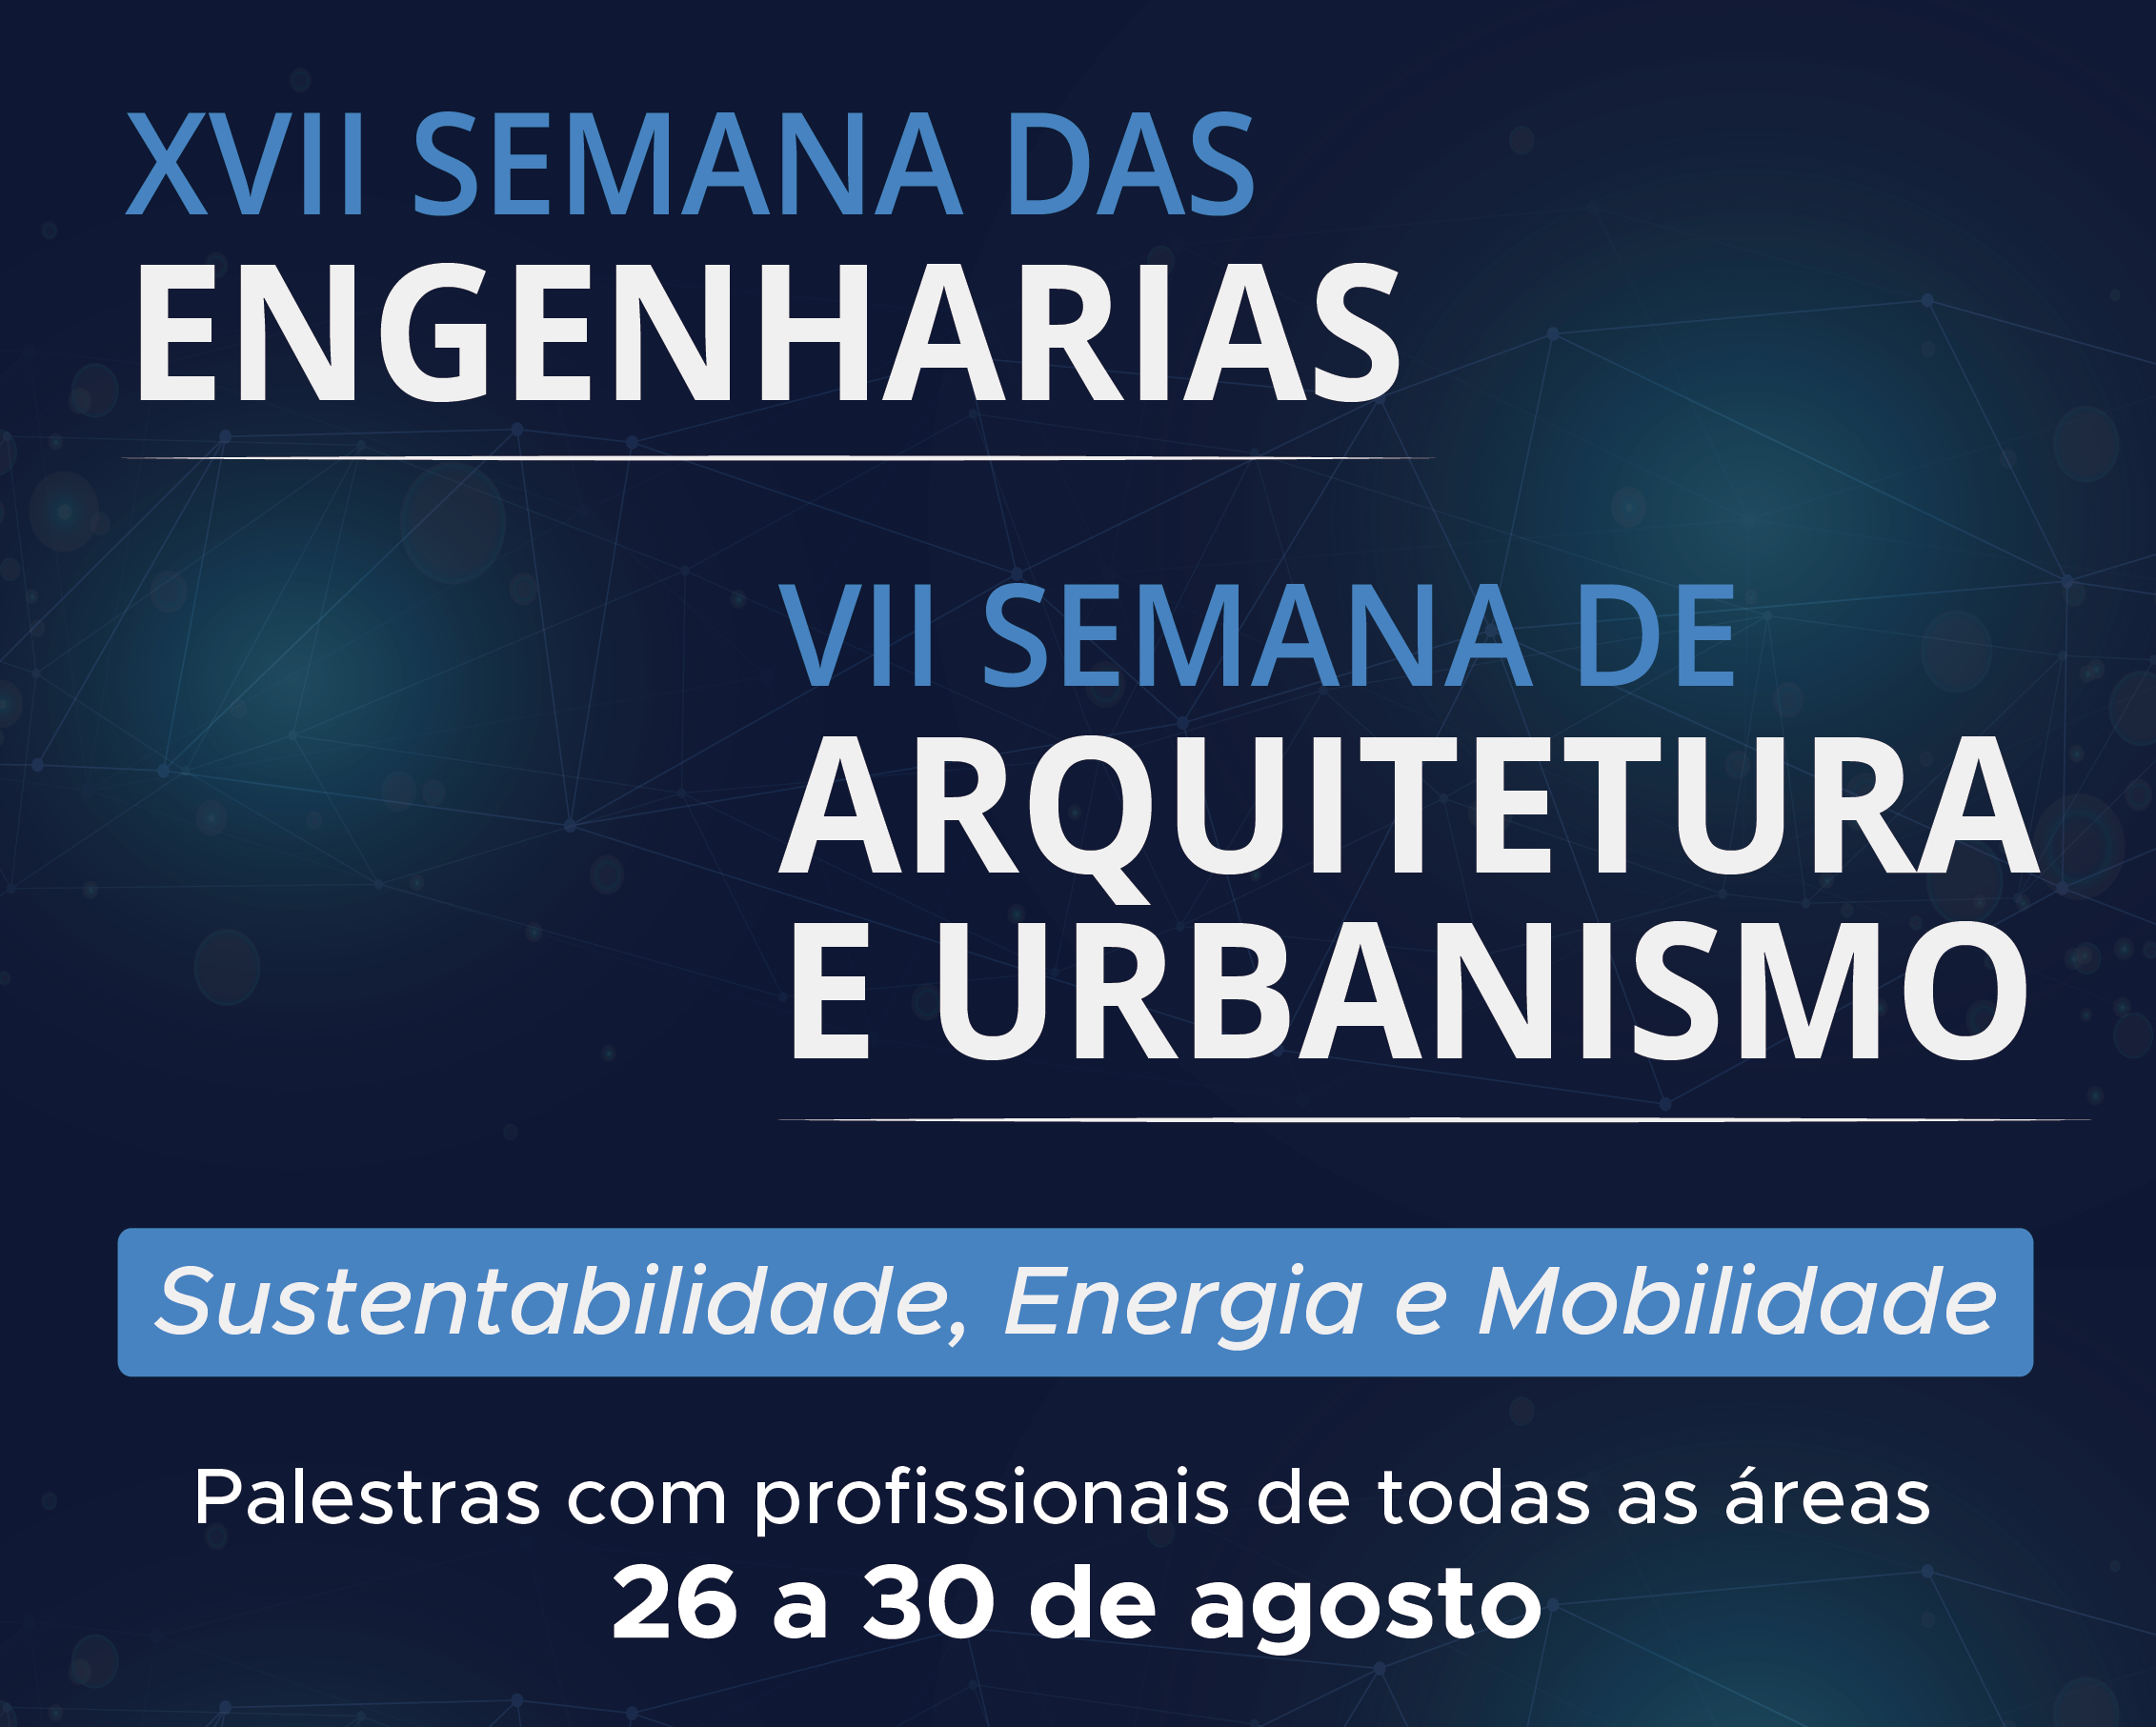 Centro Universitário Fundação Santo André realizará sua XVII Semana de Engenharias / VII Semana de Arquitetura e Urbanismo